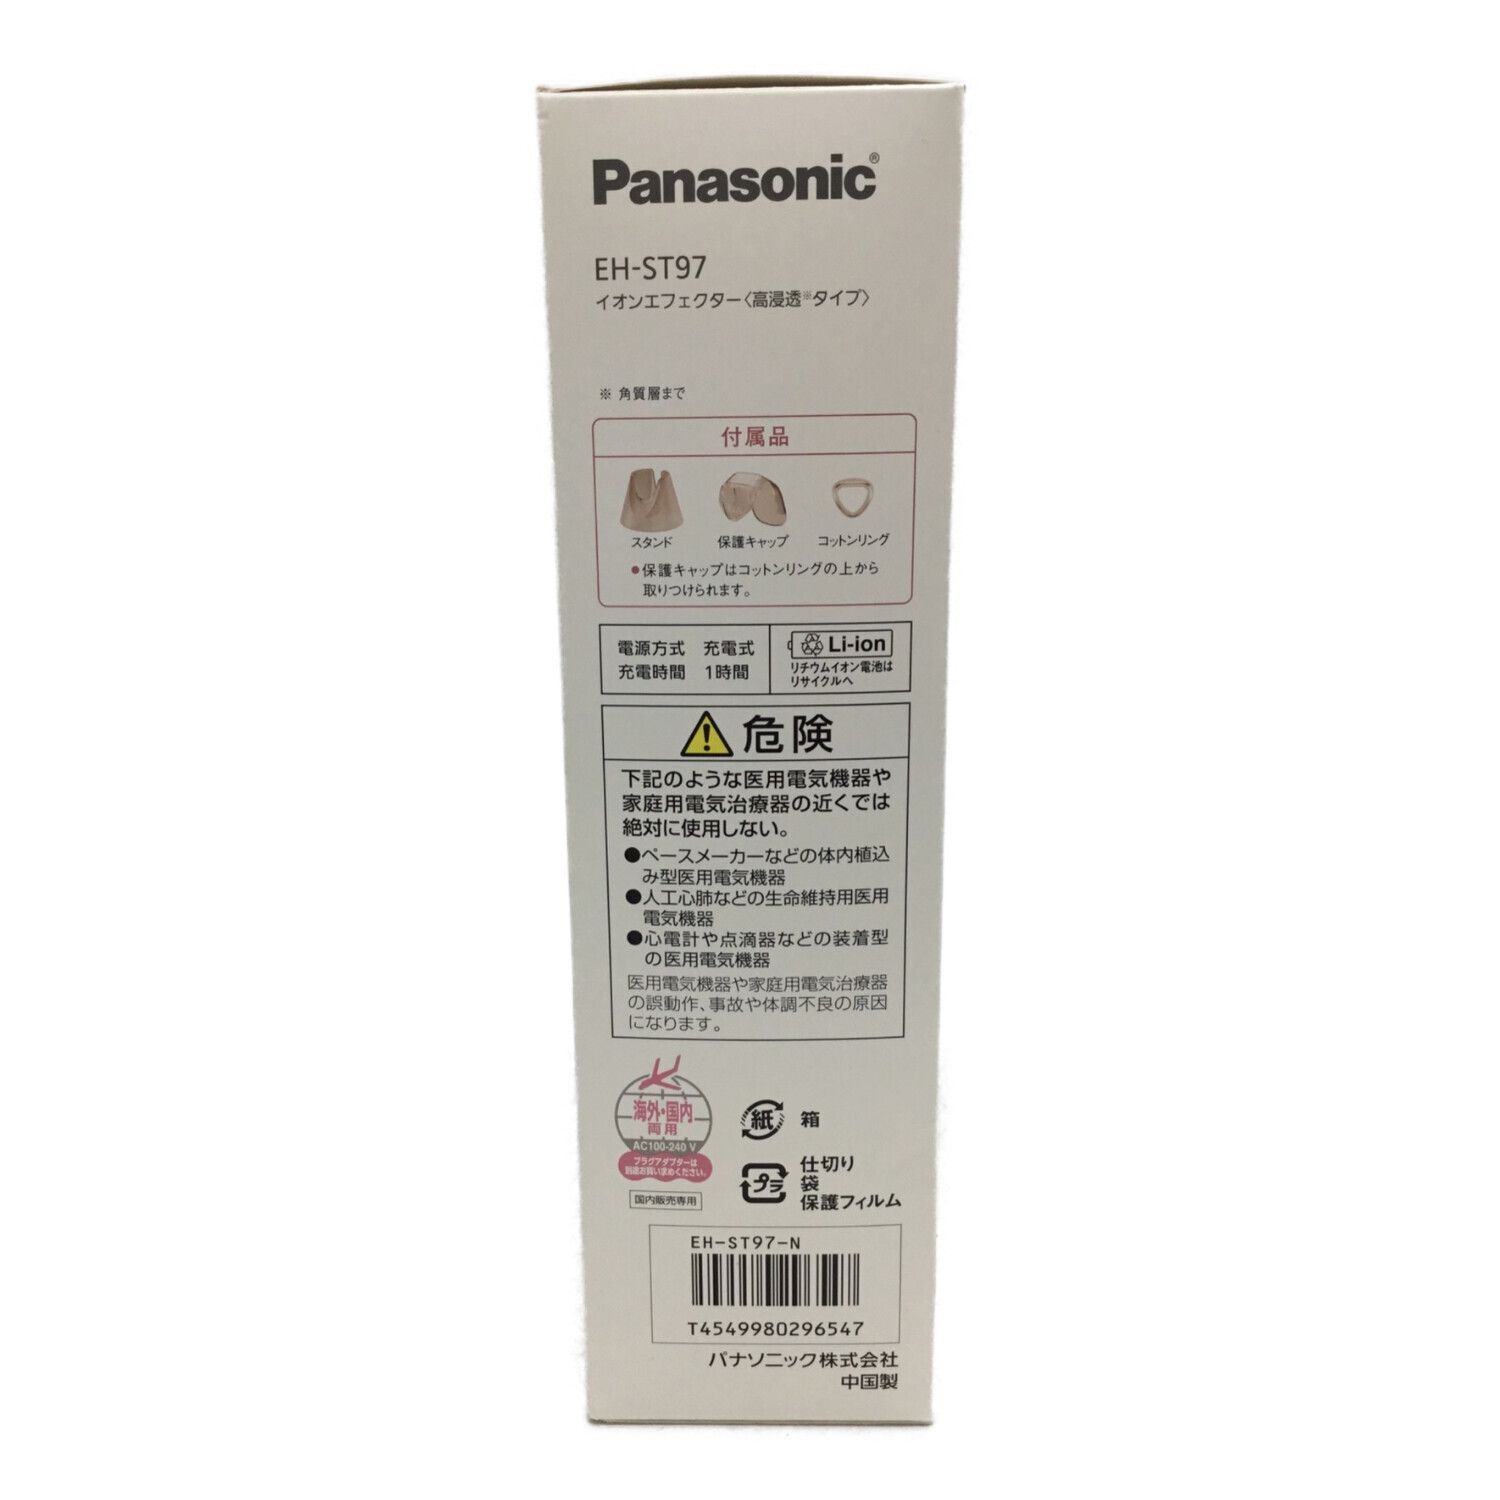 パナソニックPanasonic EH-ST97-N イオンエフェクター